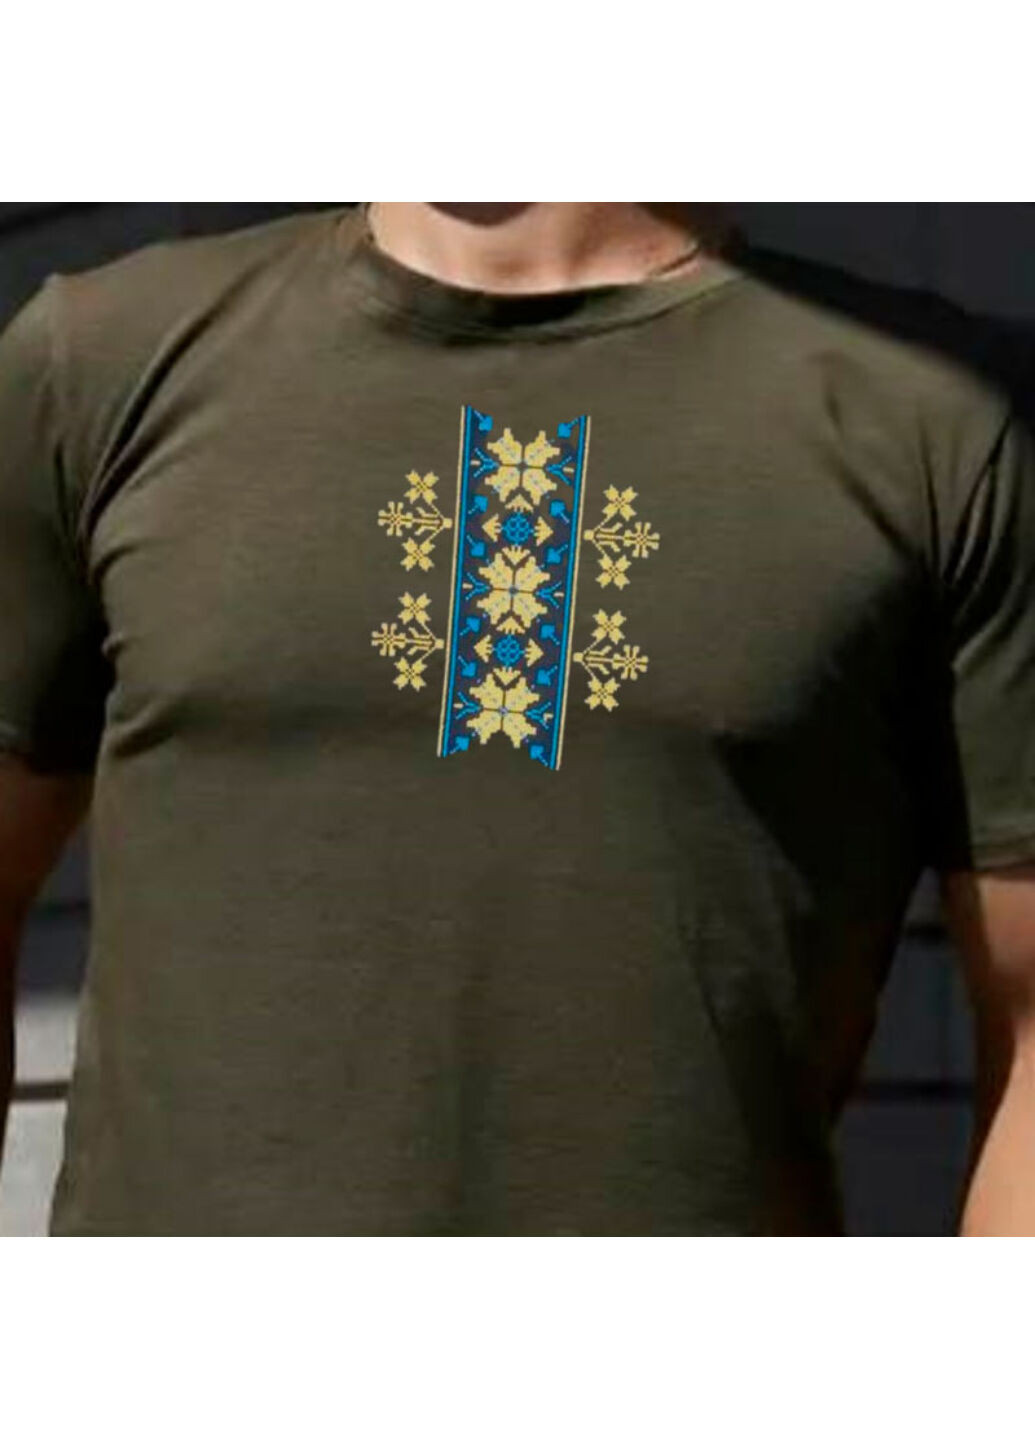 Хакі (оливкова) футболка з вишивкою етно 01-3 чоловіча millytary green l No Brand